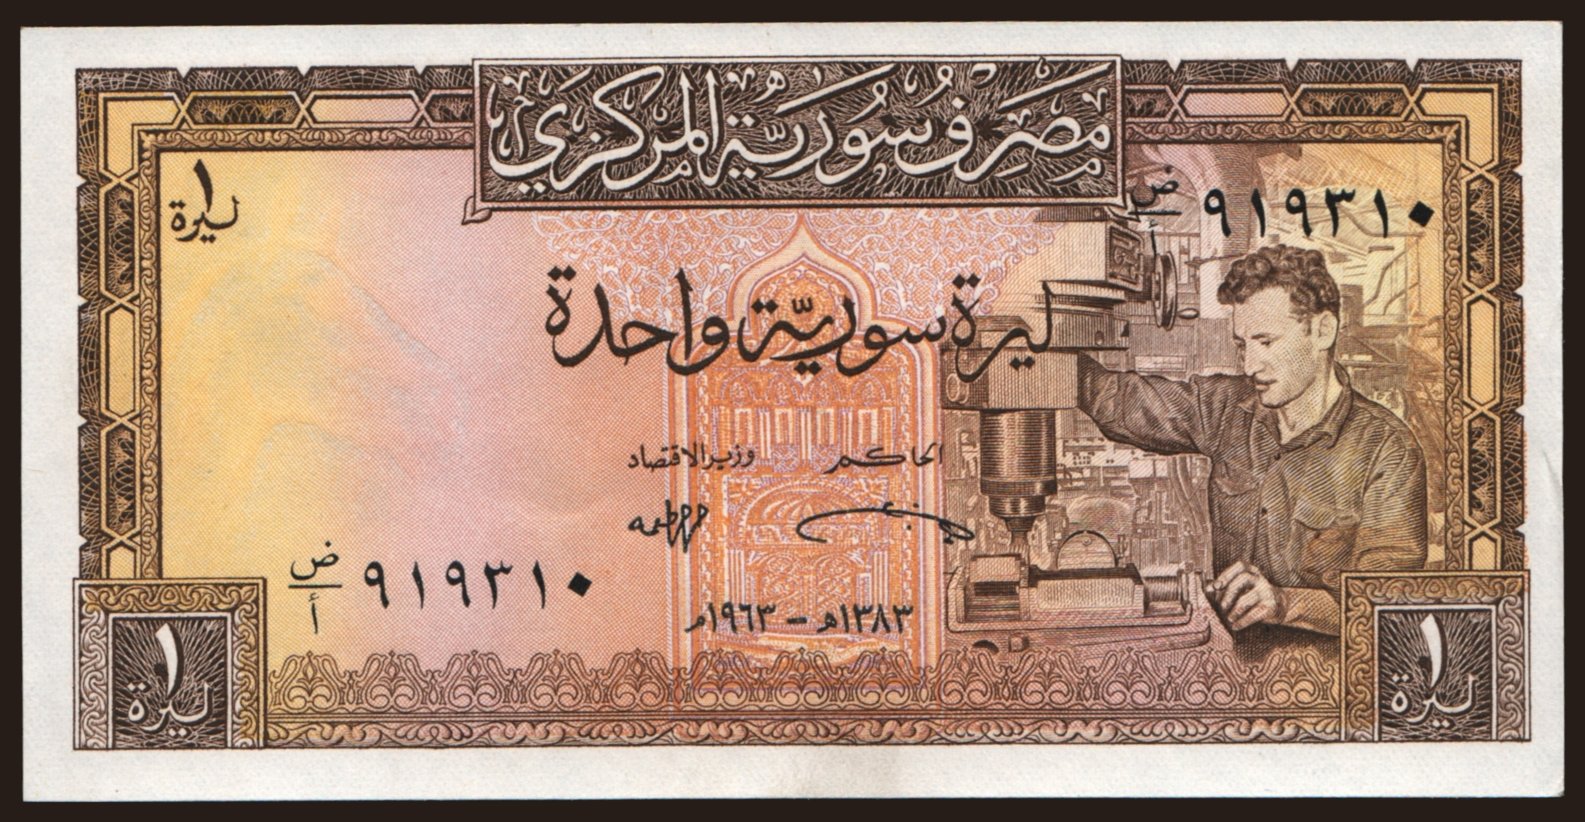 1 pound, 1963